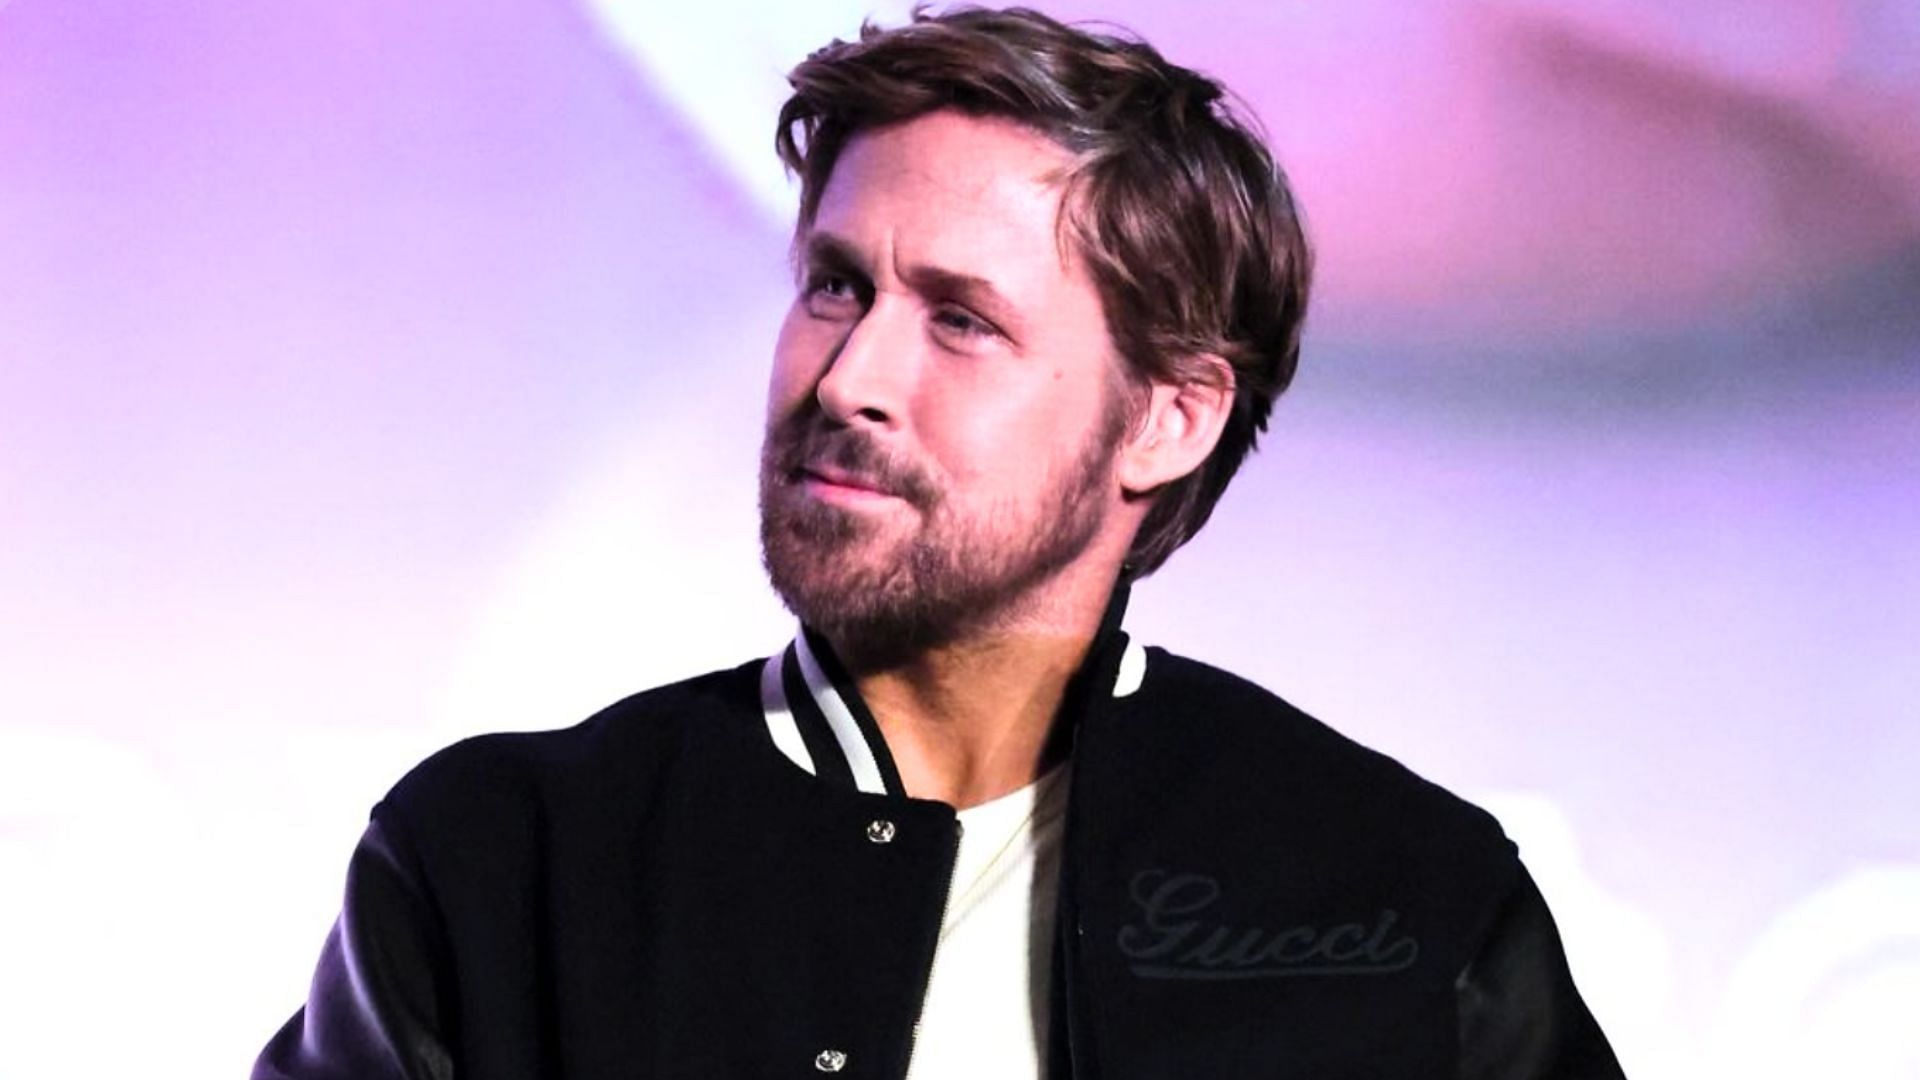 Rumors suggest Ryan Gosling